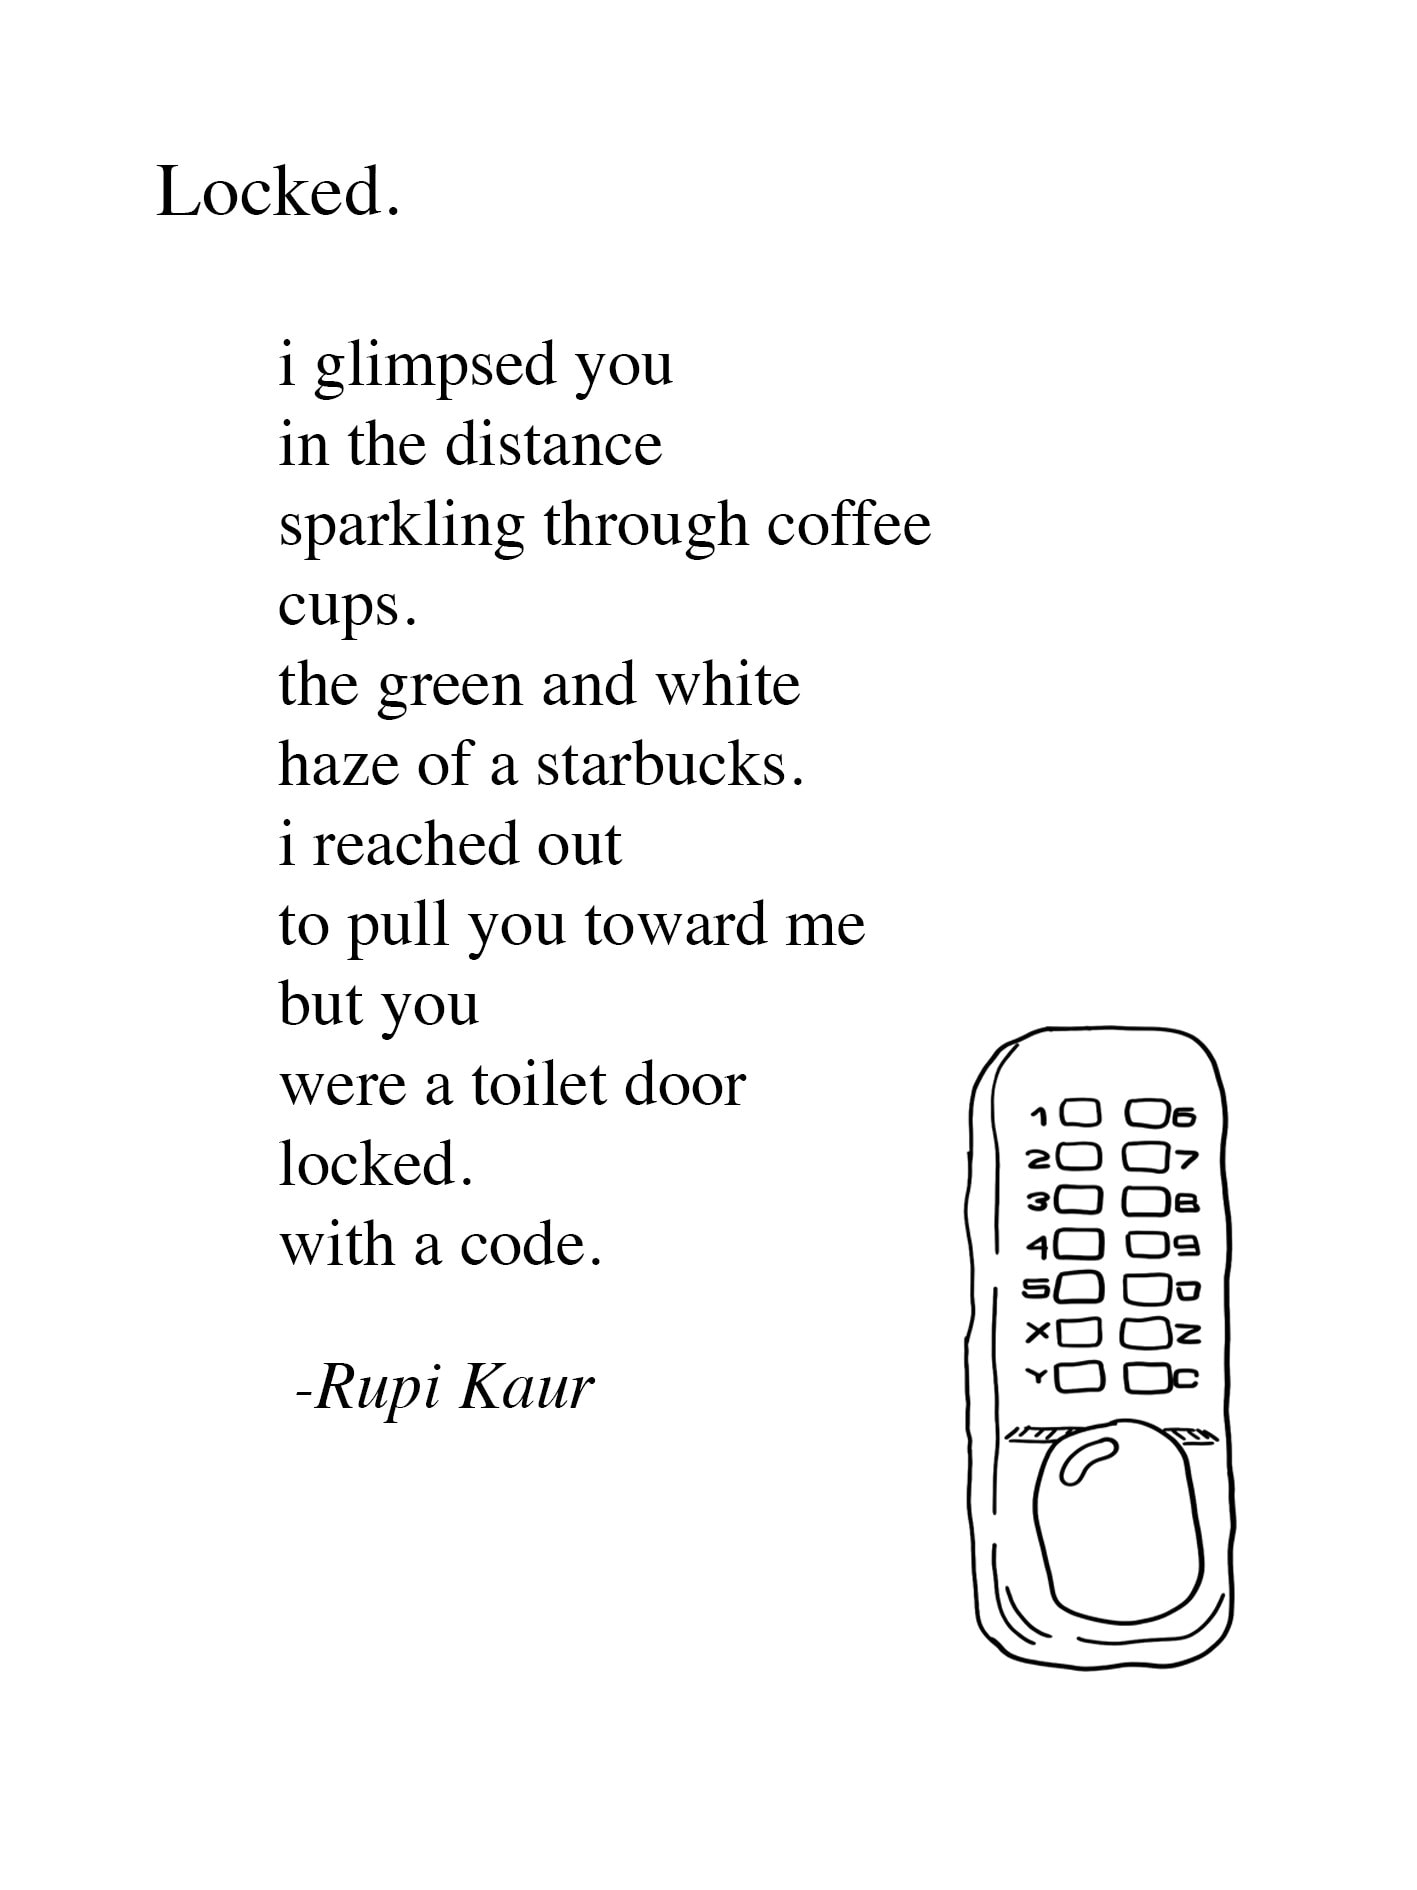 Scrivi una poesia rupi kaur su un argomento a tua scelta